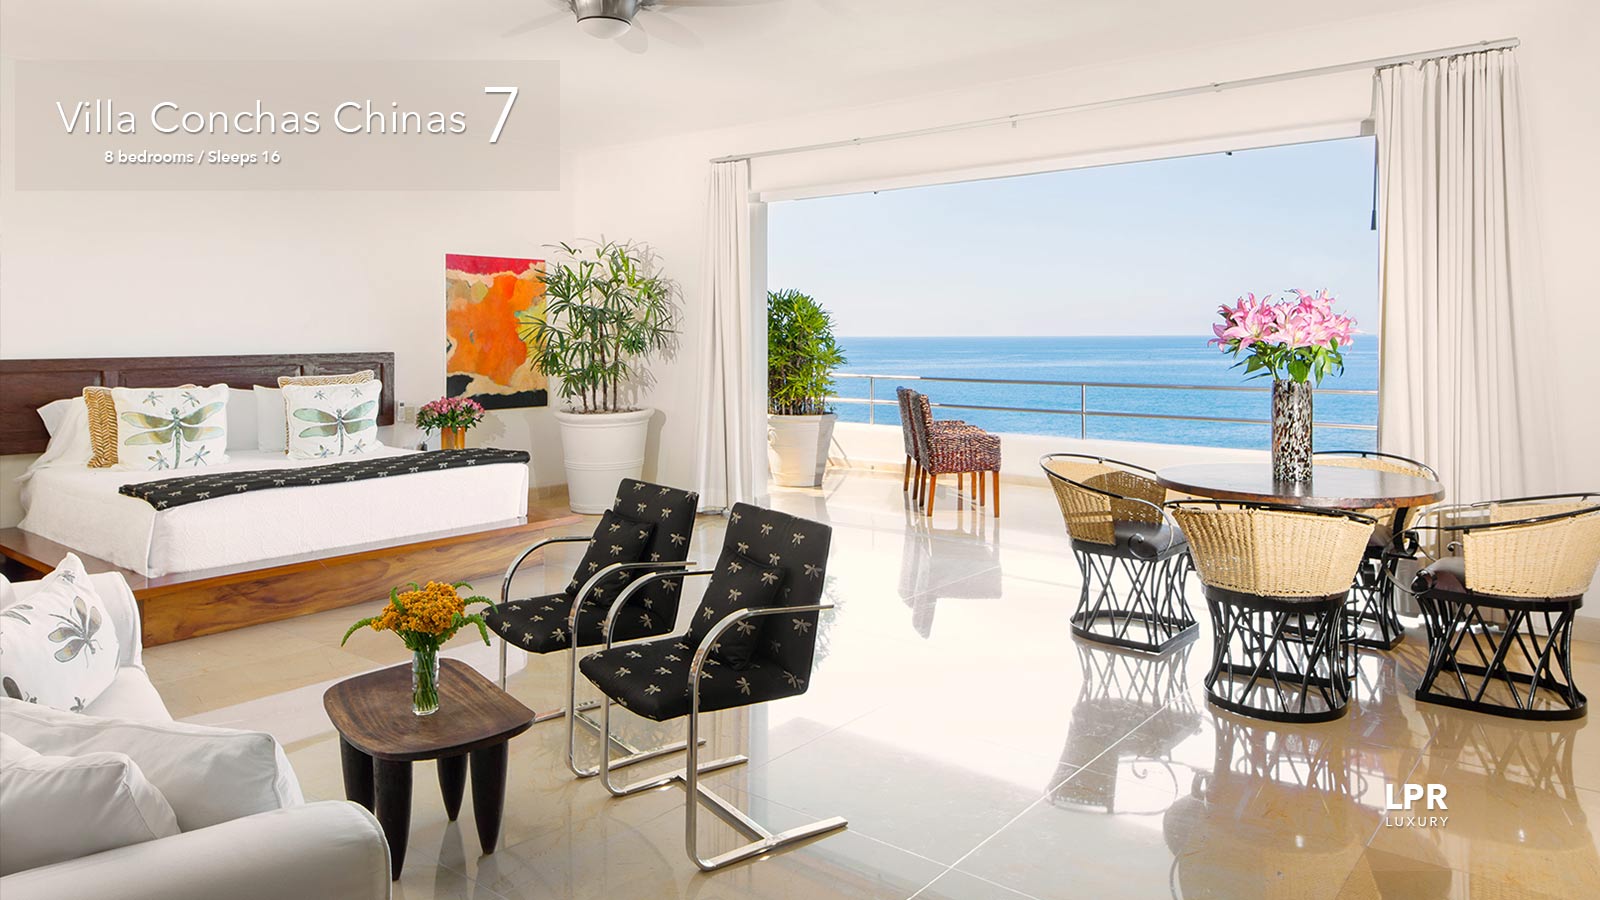 Villa Conchas Chinas 7 - Luxury Puerto Vallarta real estate and vacation rentals - Mexico